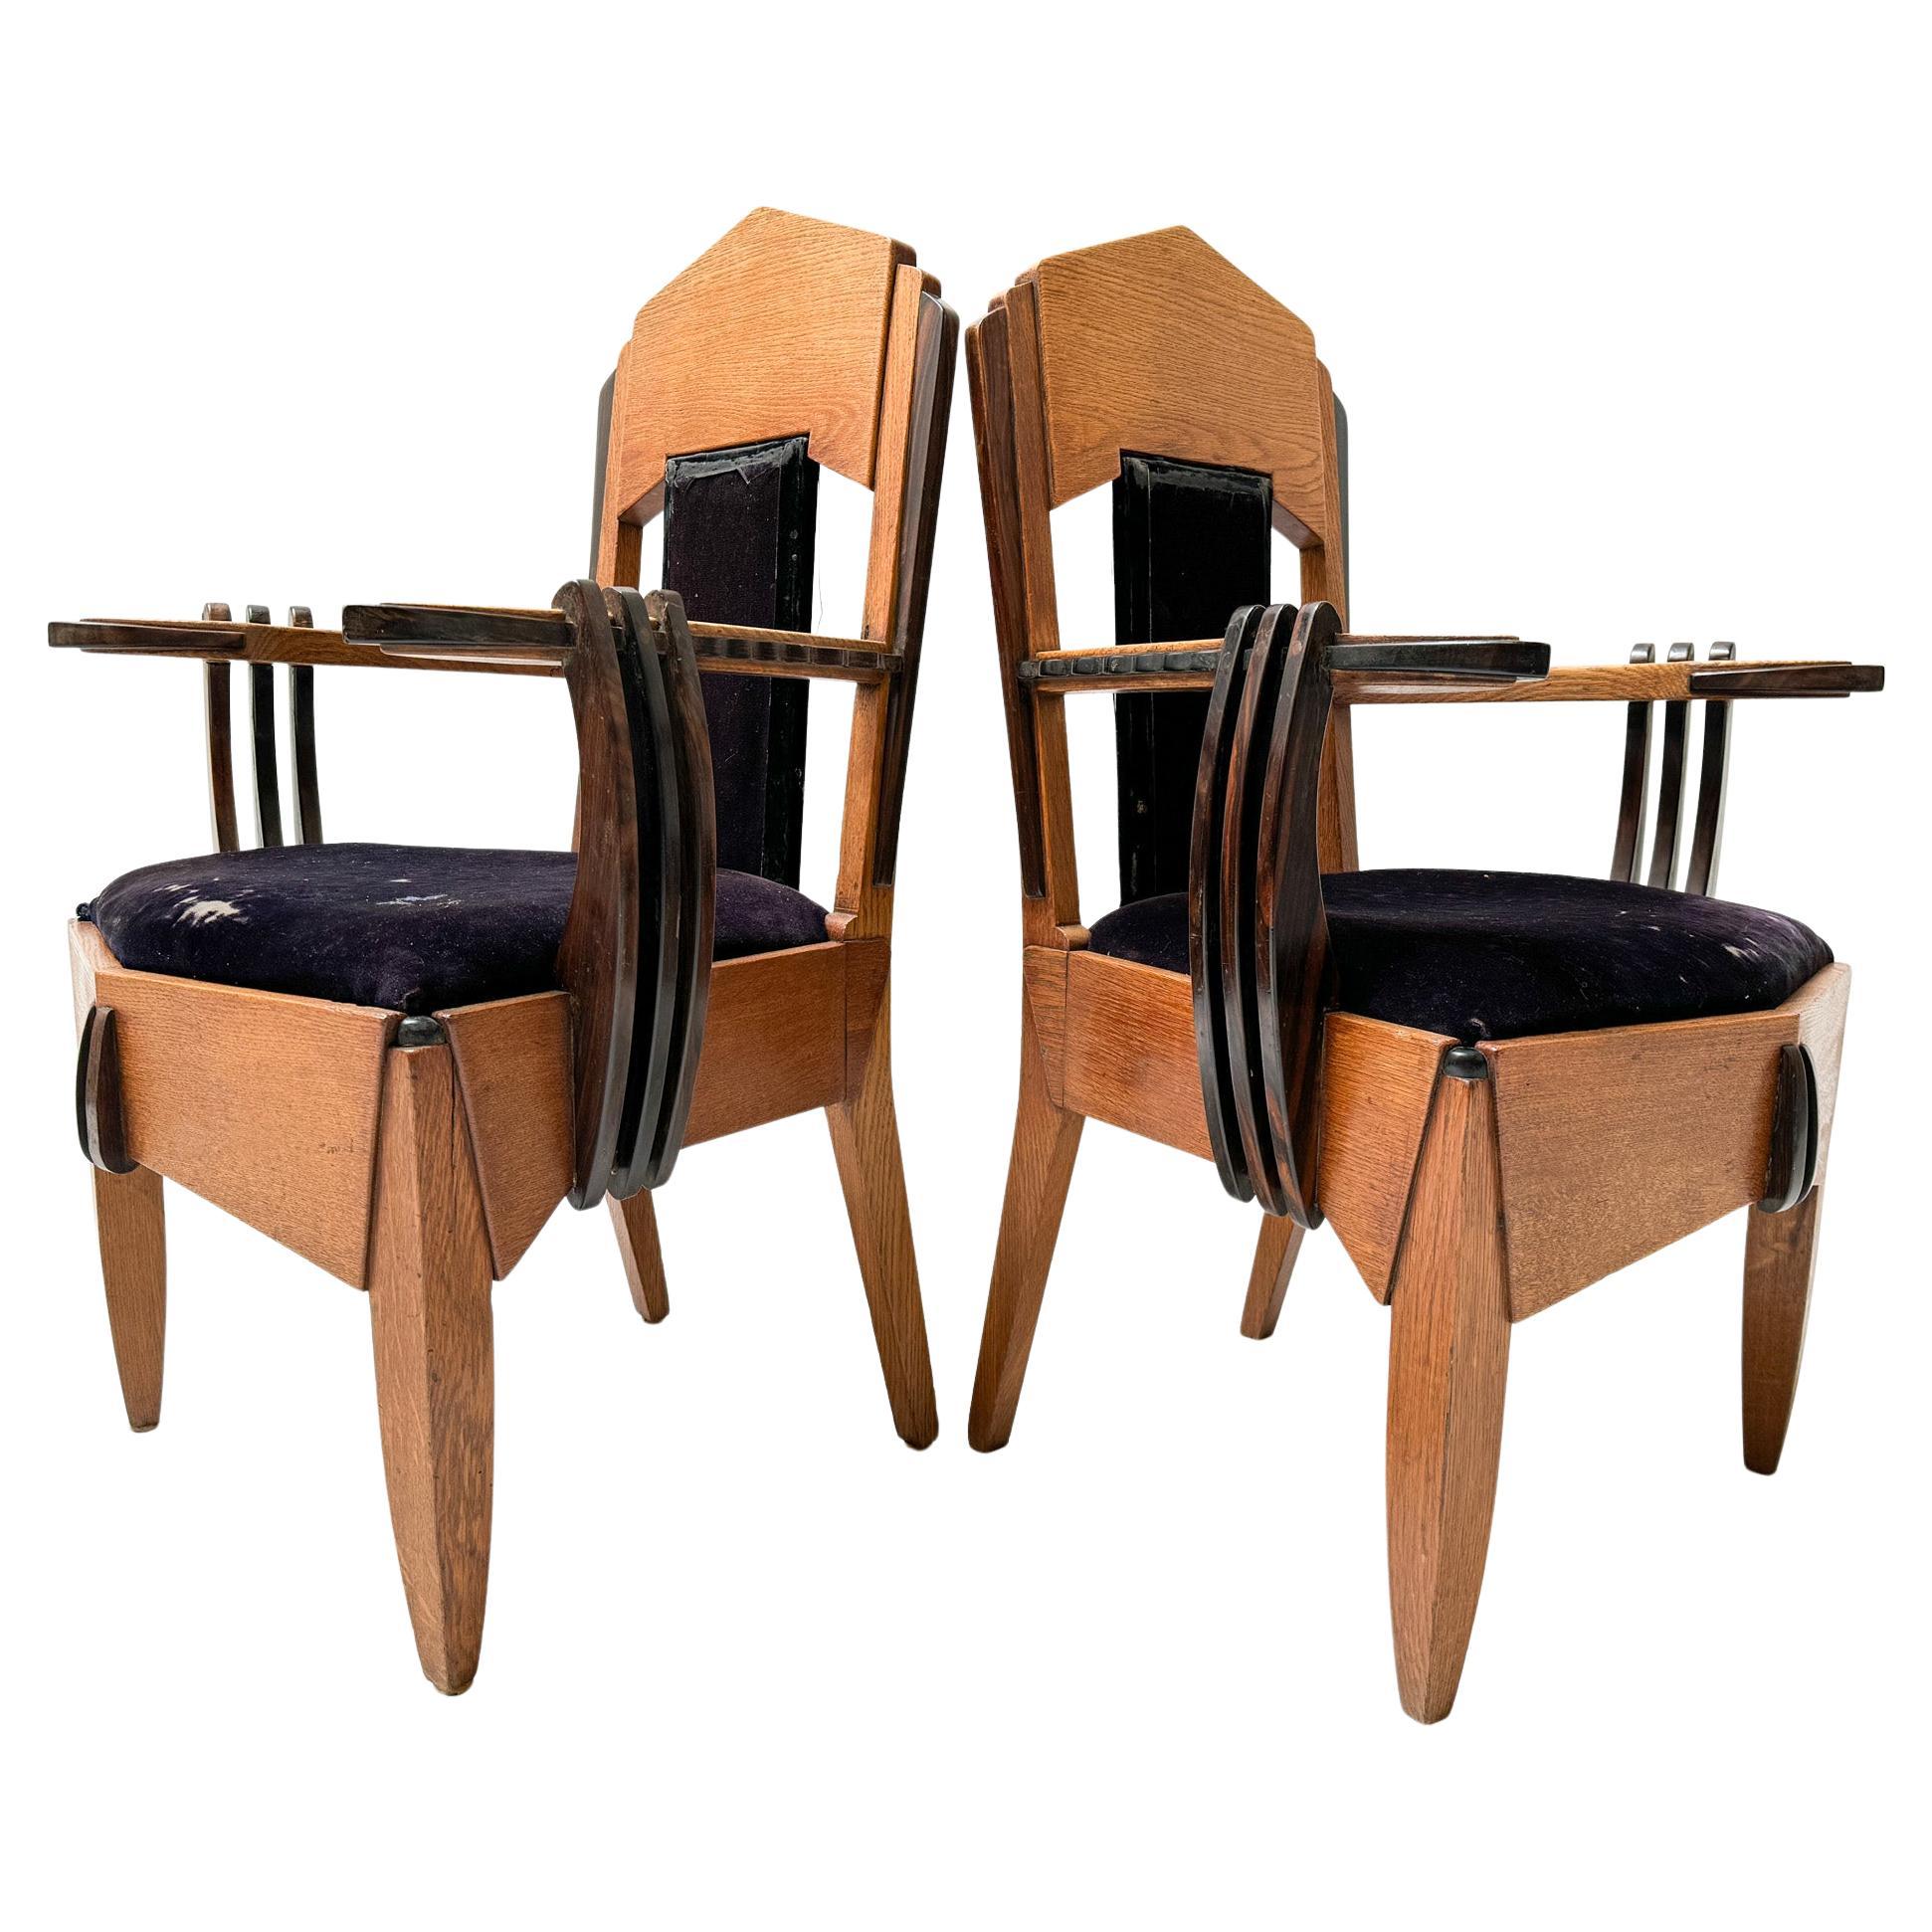 Deux fauteuils Art Déco Amsterdamse School de Hildo Krop, années 1920